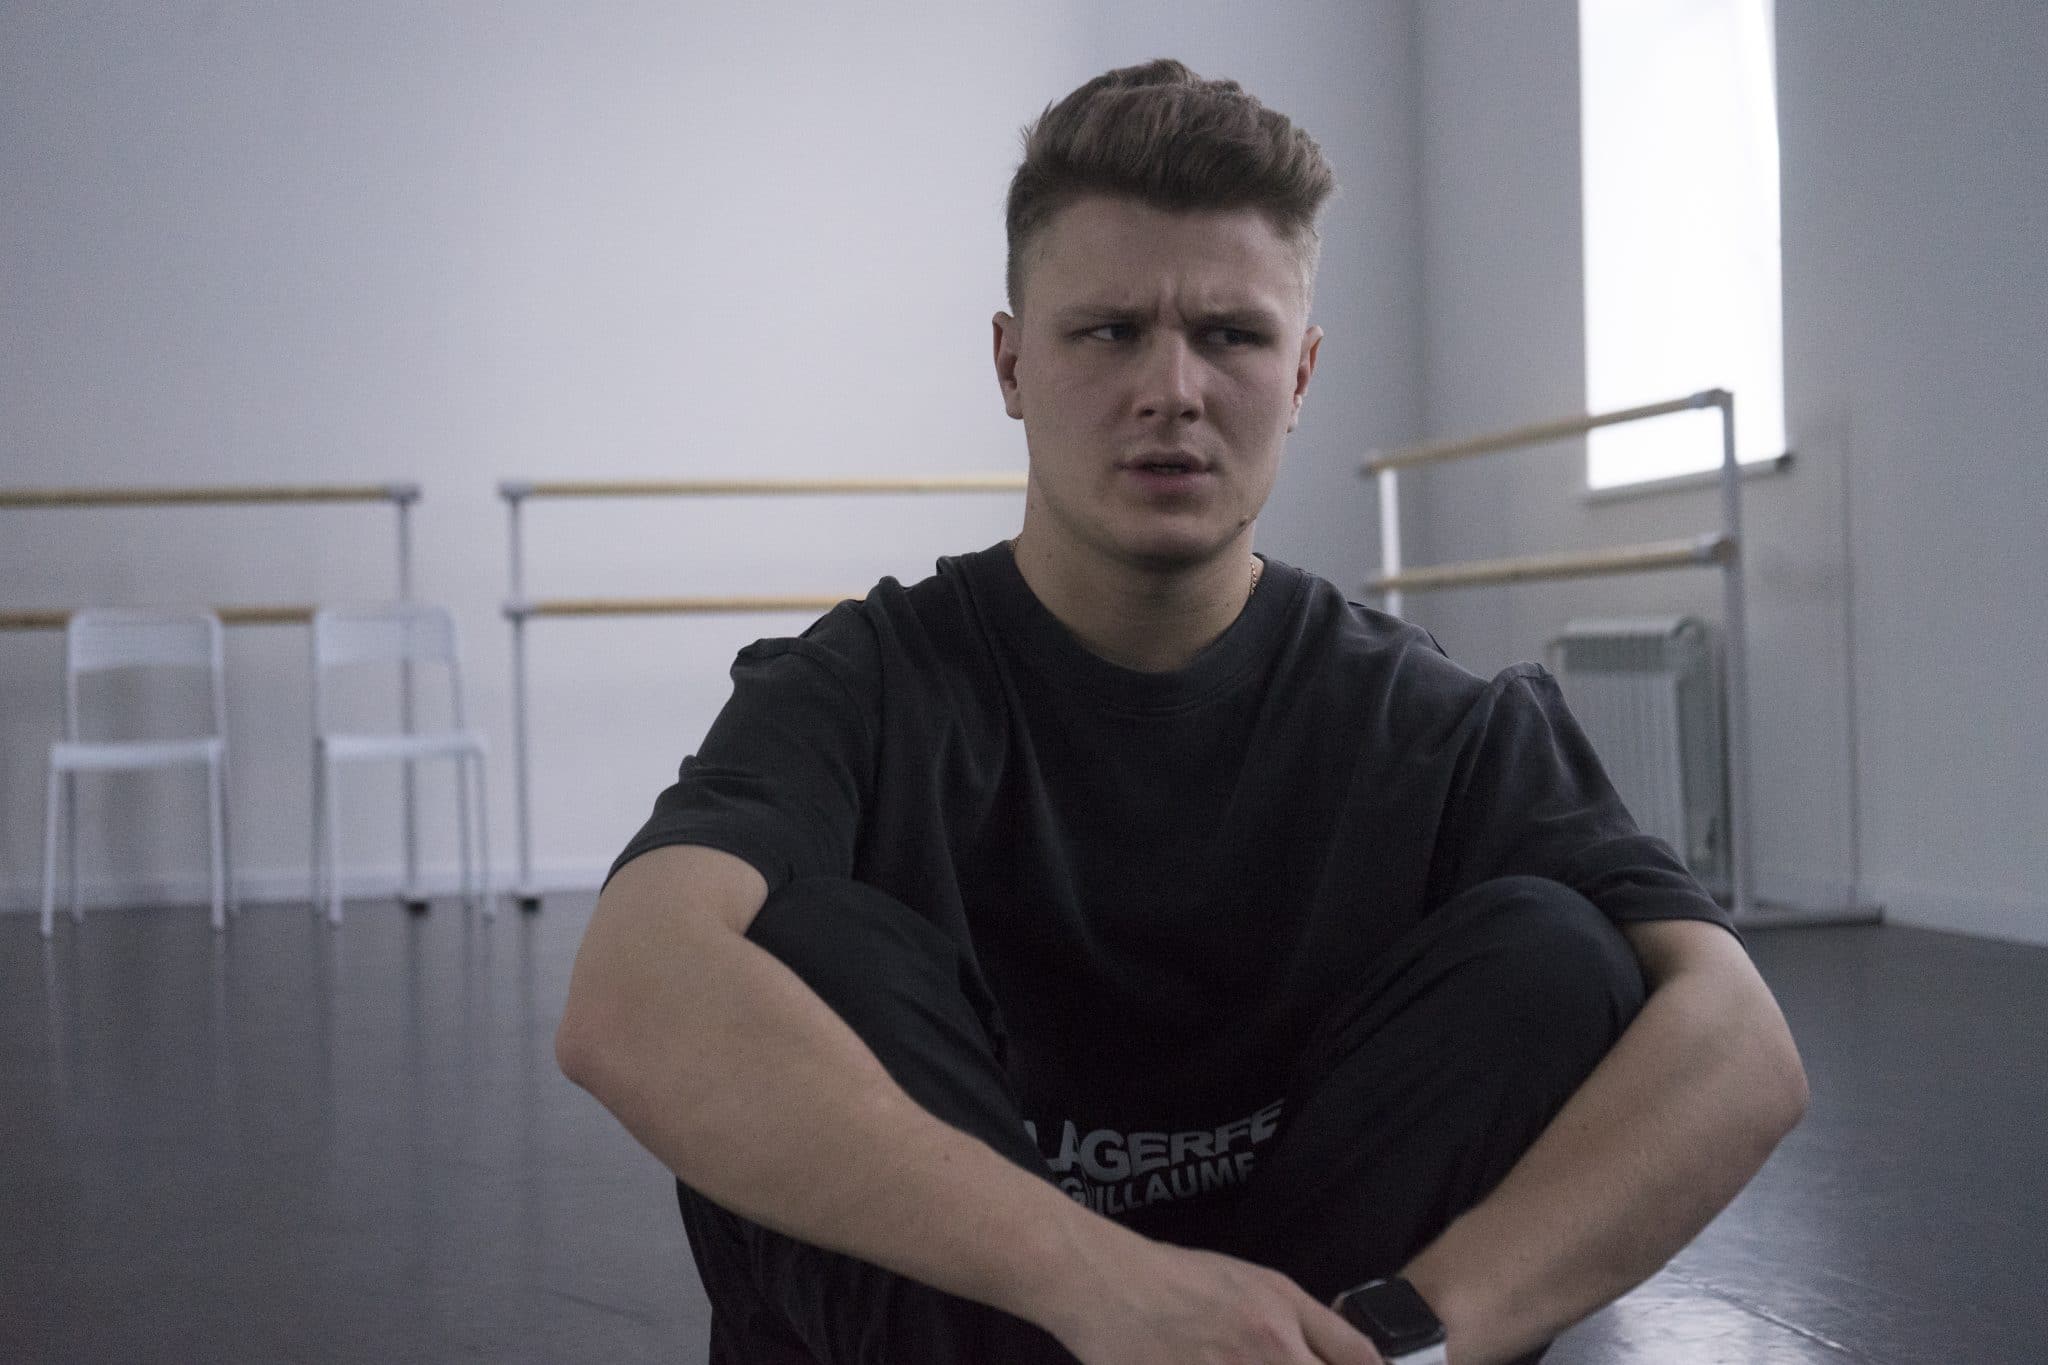 "Я всегда хотел внести свой вклад в хореографию" - интервью с основателем школы танца RBK Даниилом Рыбьяковым